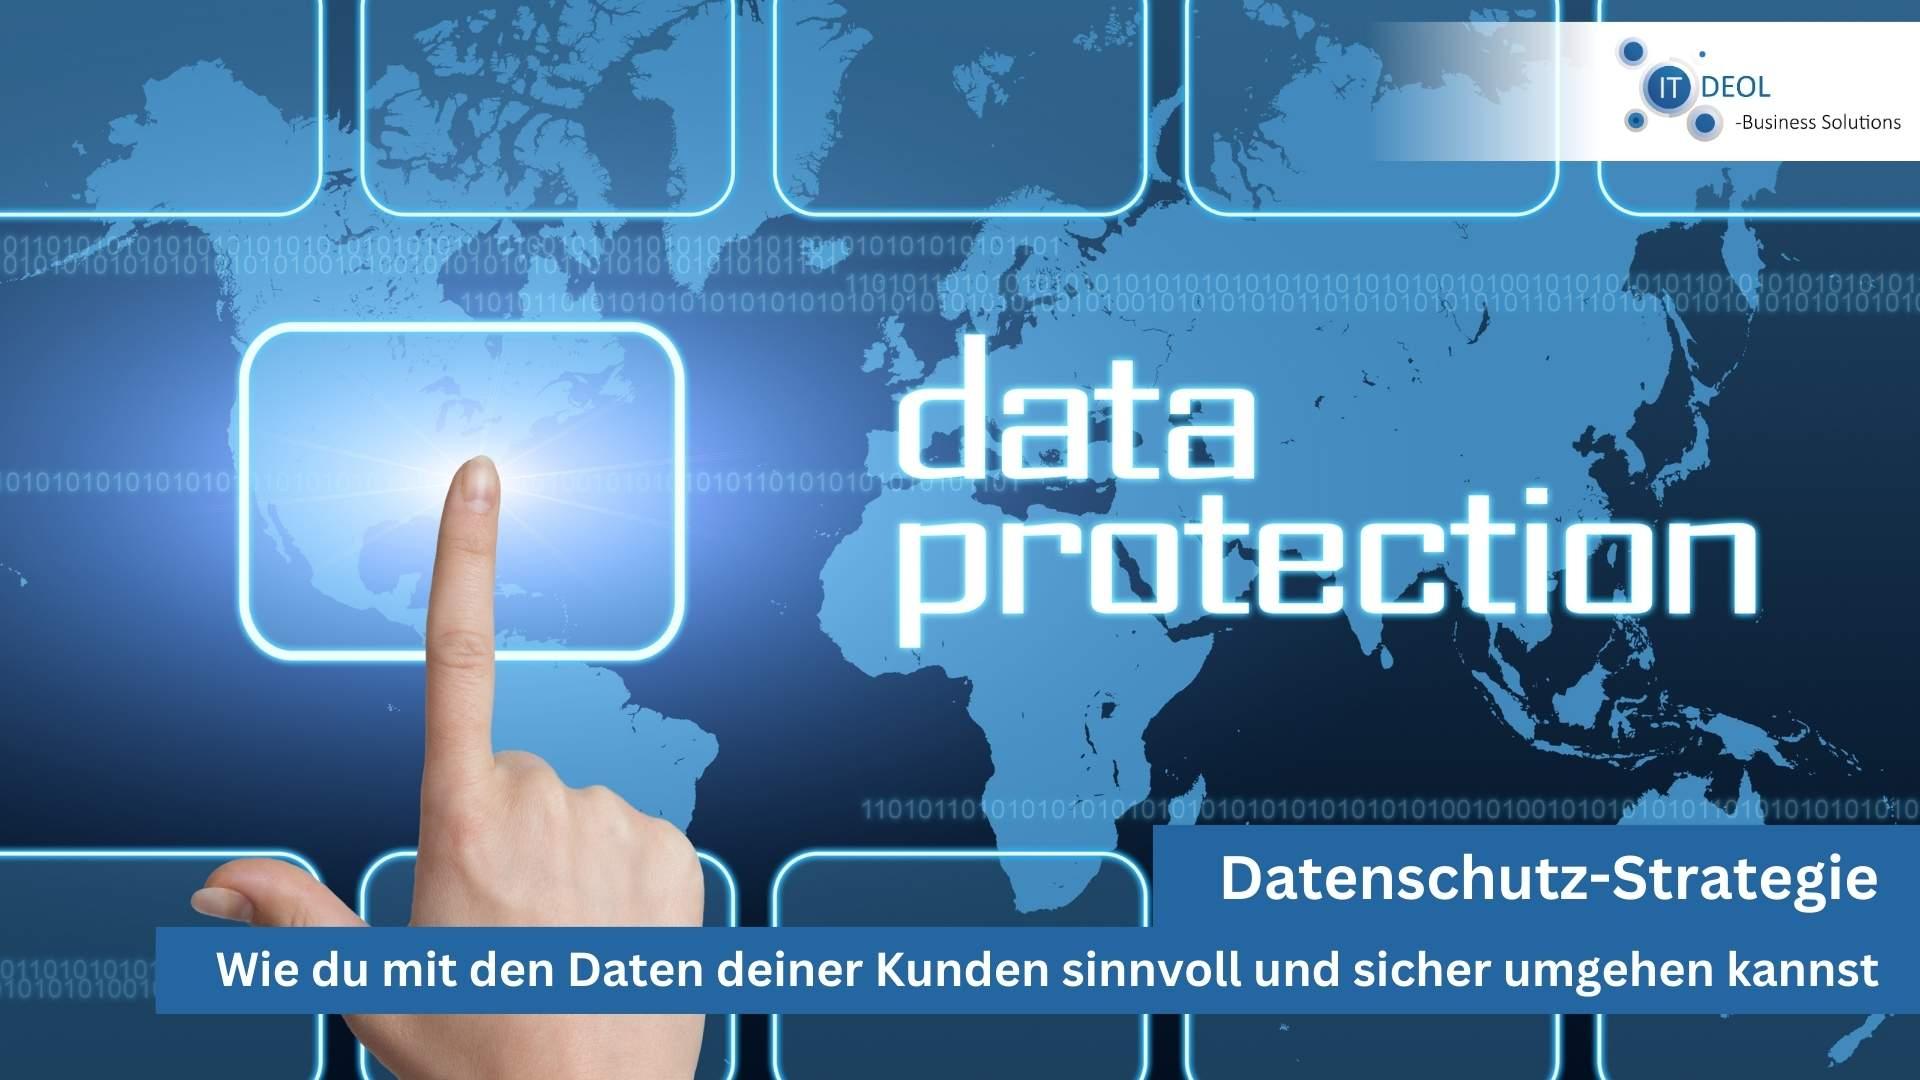 Datenschutz Strategie mit IT-Deol